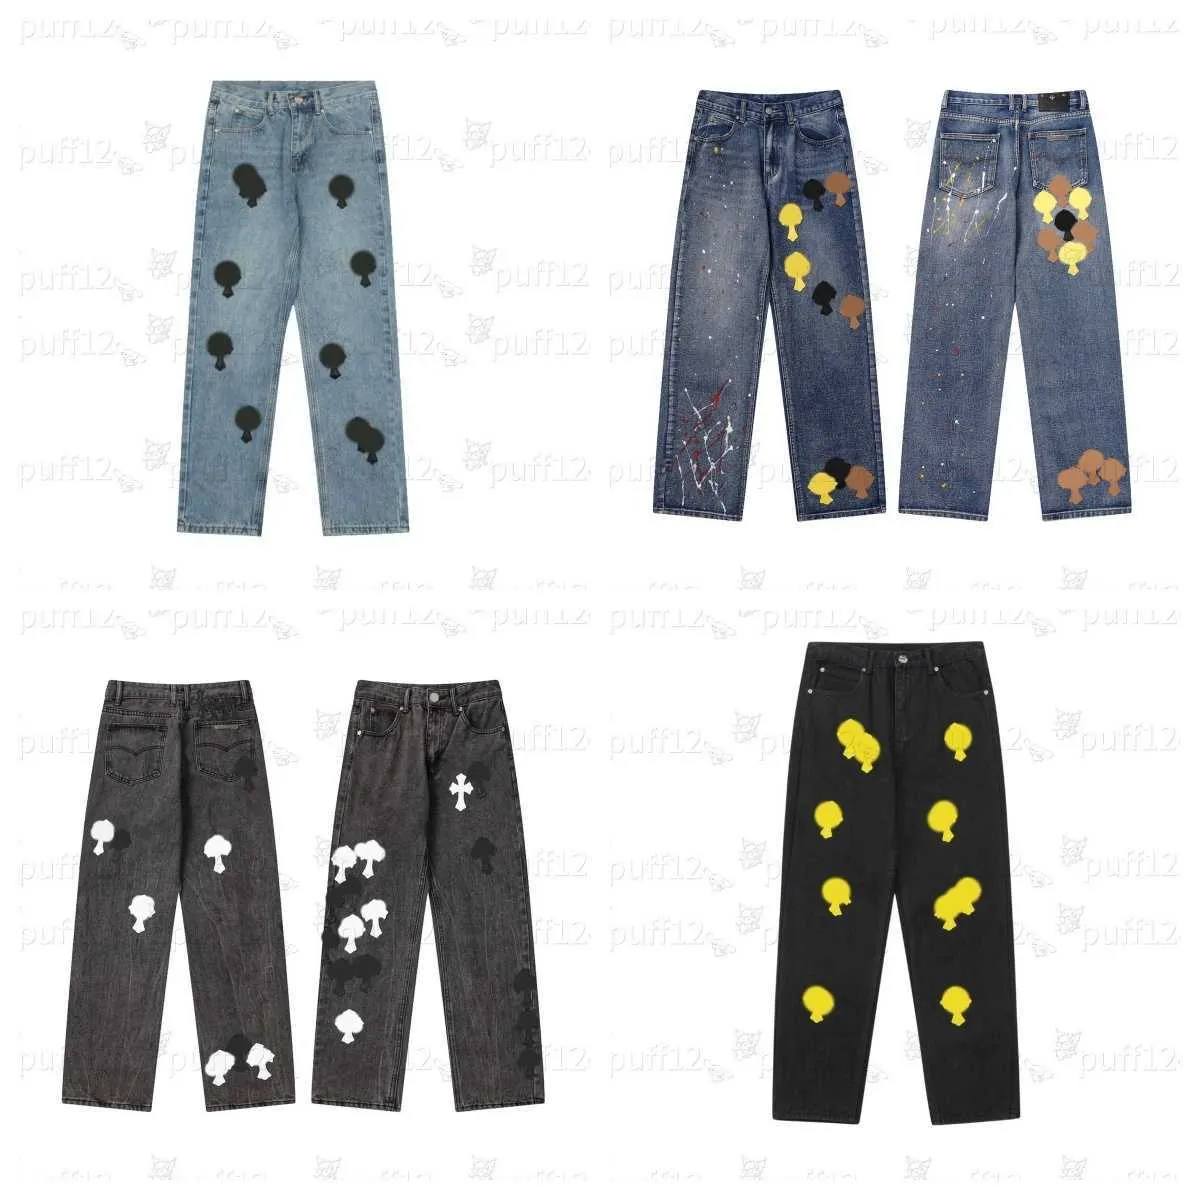 Мужские джинсы Дизайнерские джинсы ch Ретро-тренд Повседневные Хай-стрит Хип-хоп Зимние мужские брюки Джинсы для бега Джемпер Ch Джинсы Джинсы с вышивкой крестиком